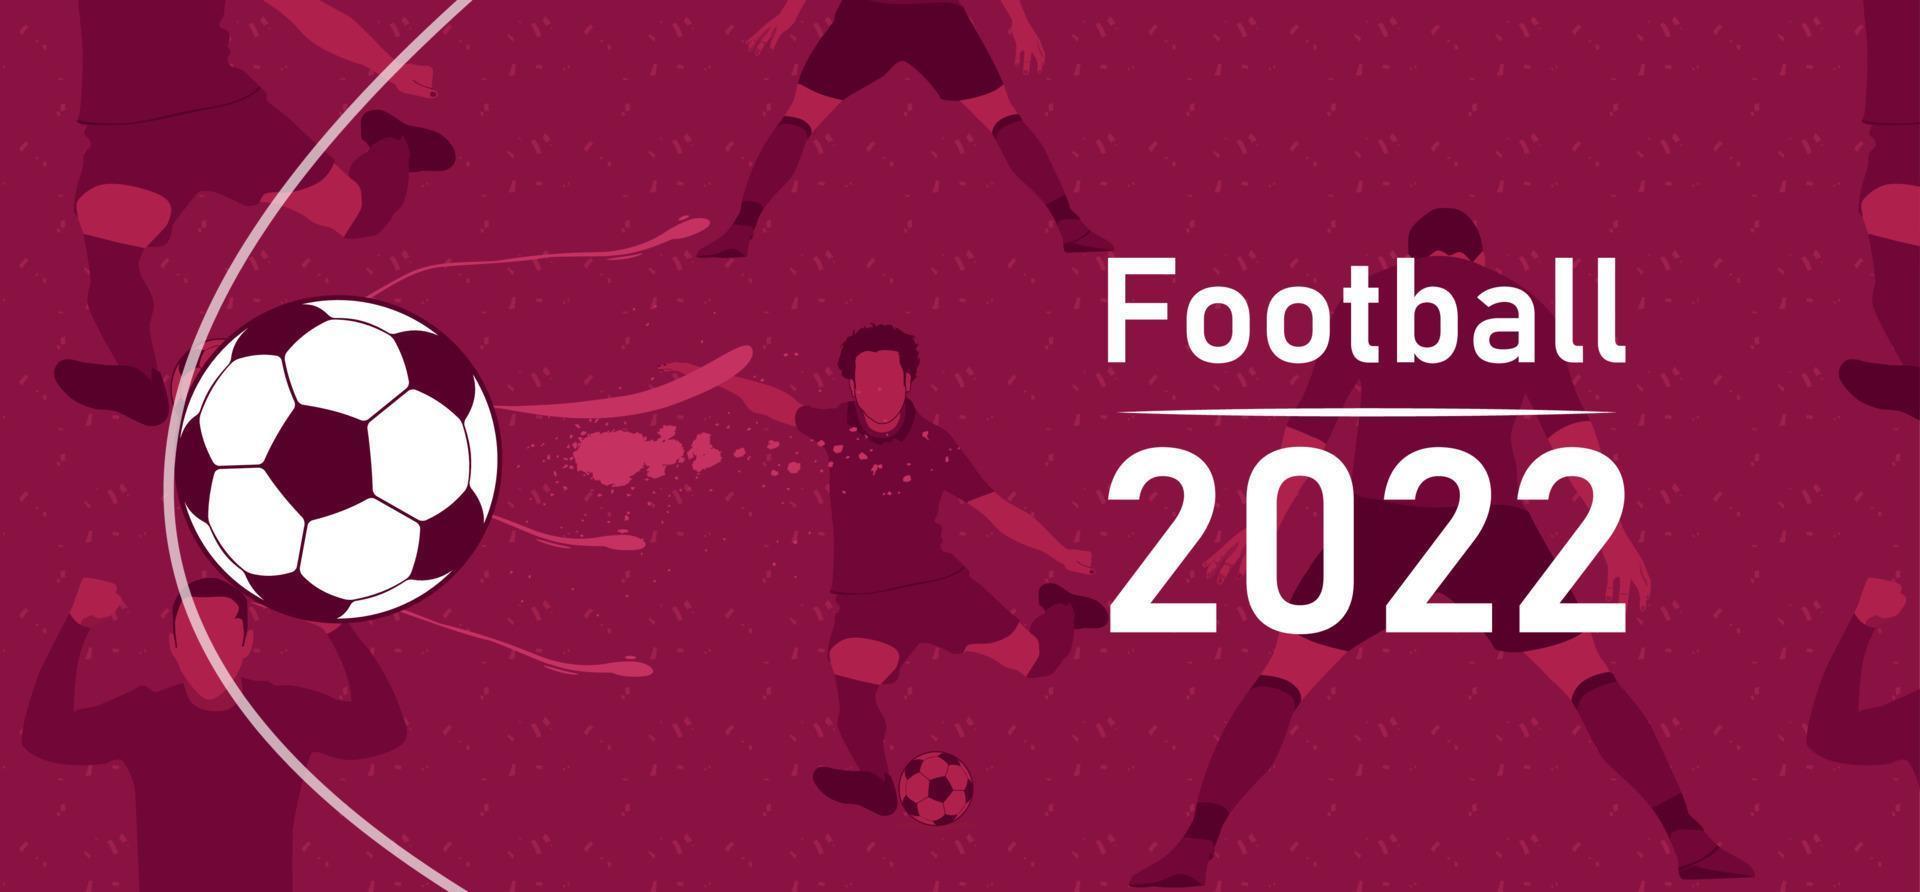 fotboll mästerskap 2022 på modern bakgrund vektor